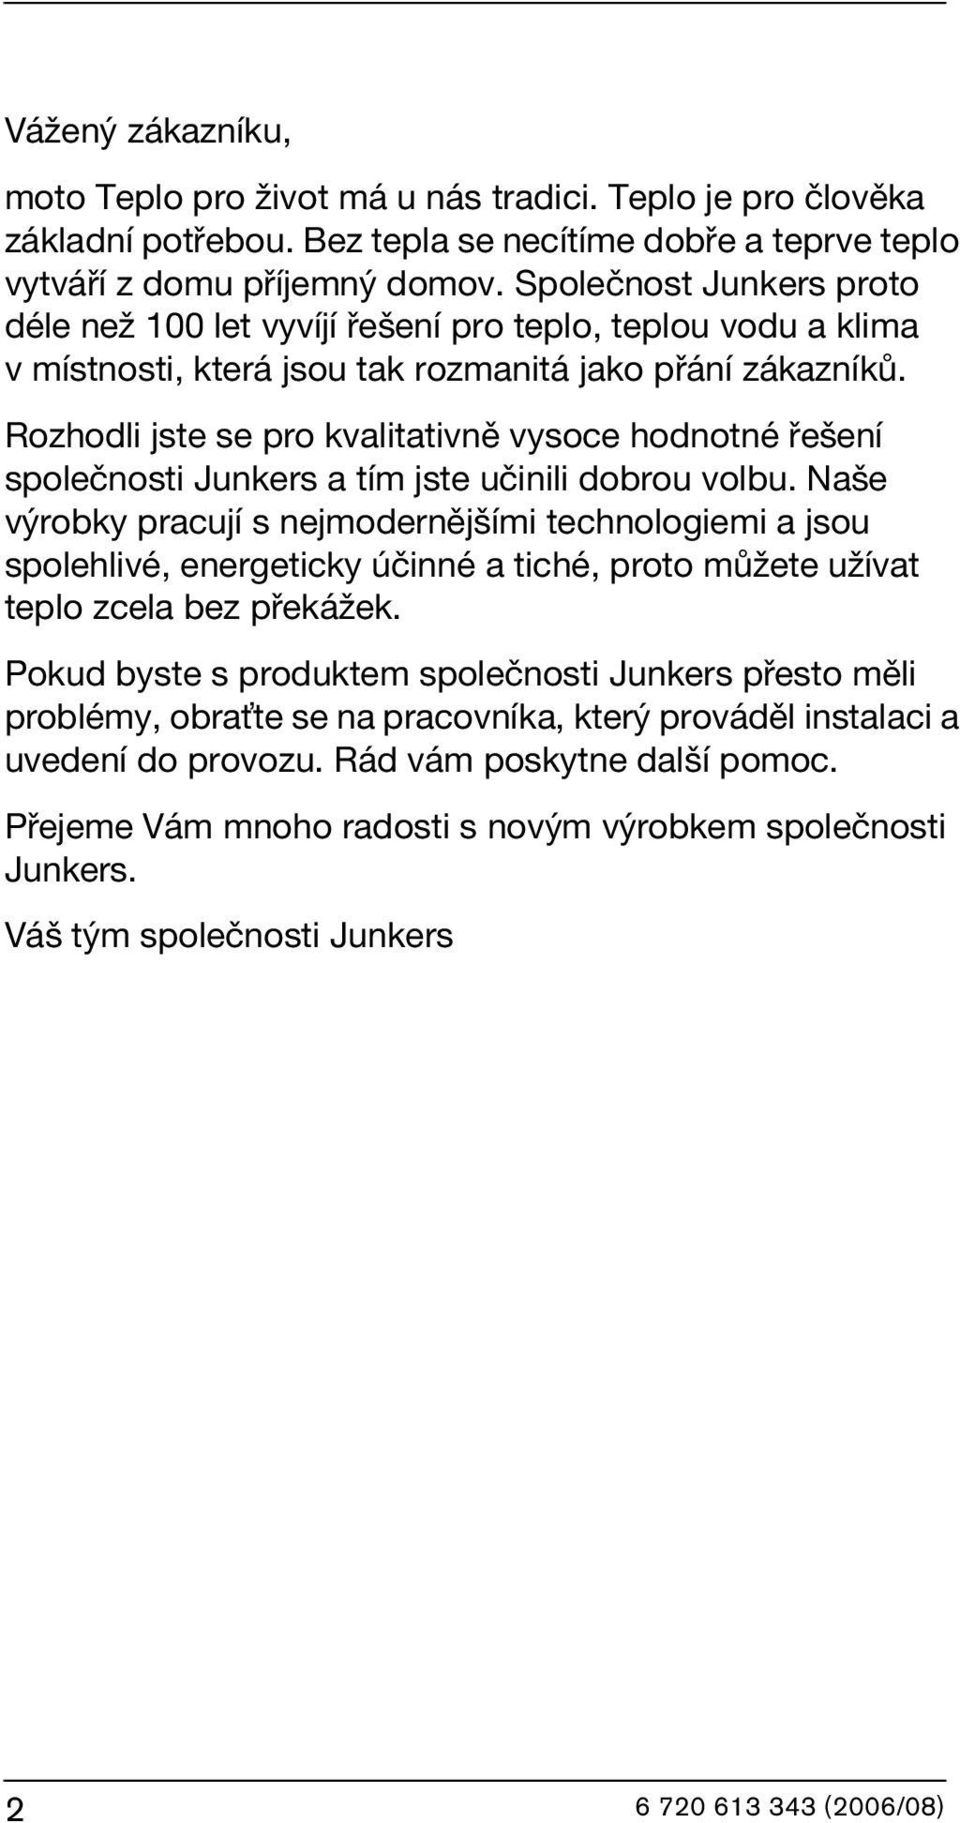 Rozhodli jste se pro kvalitativně vysoce hodnotné řešení společnosti Junkers a tím jste učinili dobrou volbu.